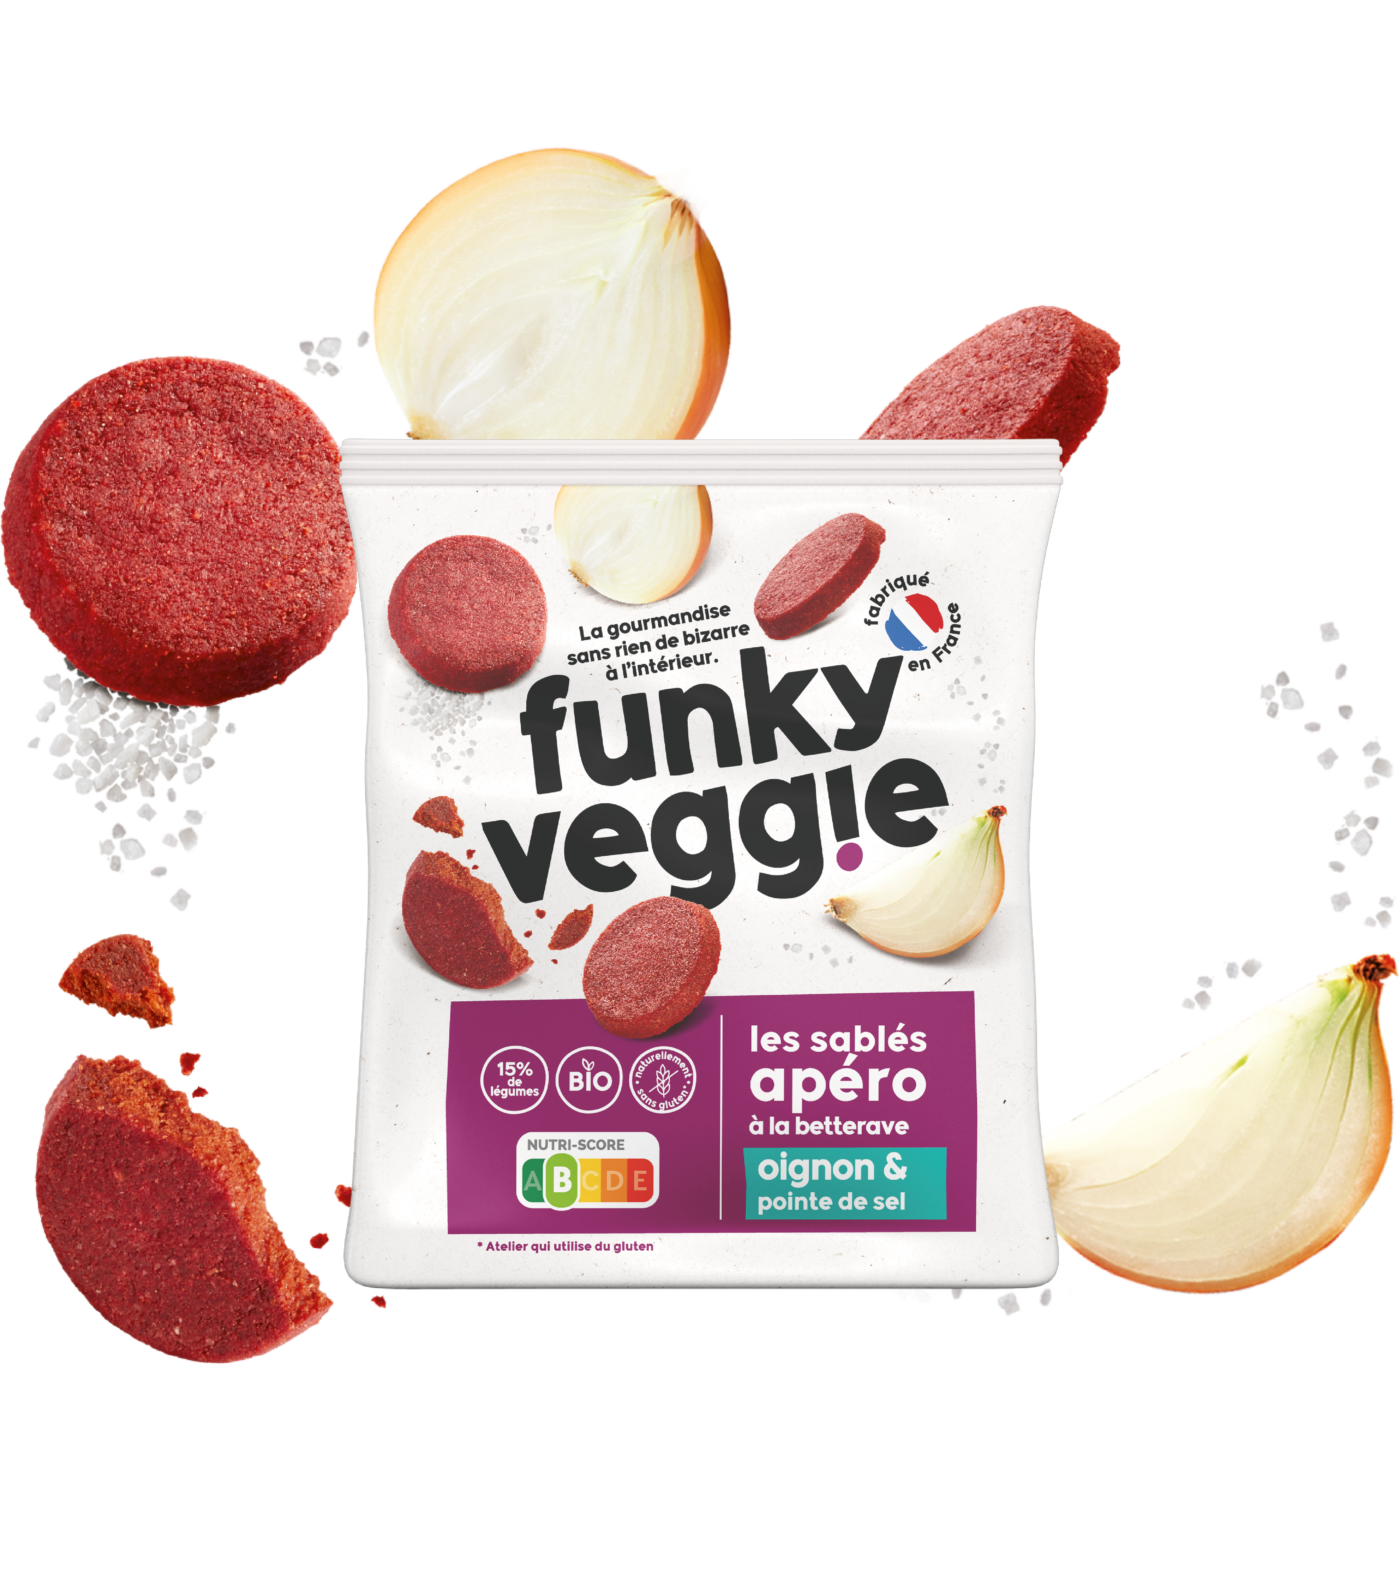 Funky Veggie - Eshop de vos produits 100% naturels et gourmands !